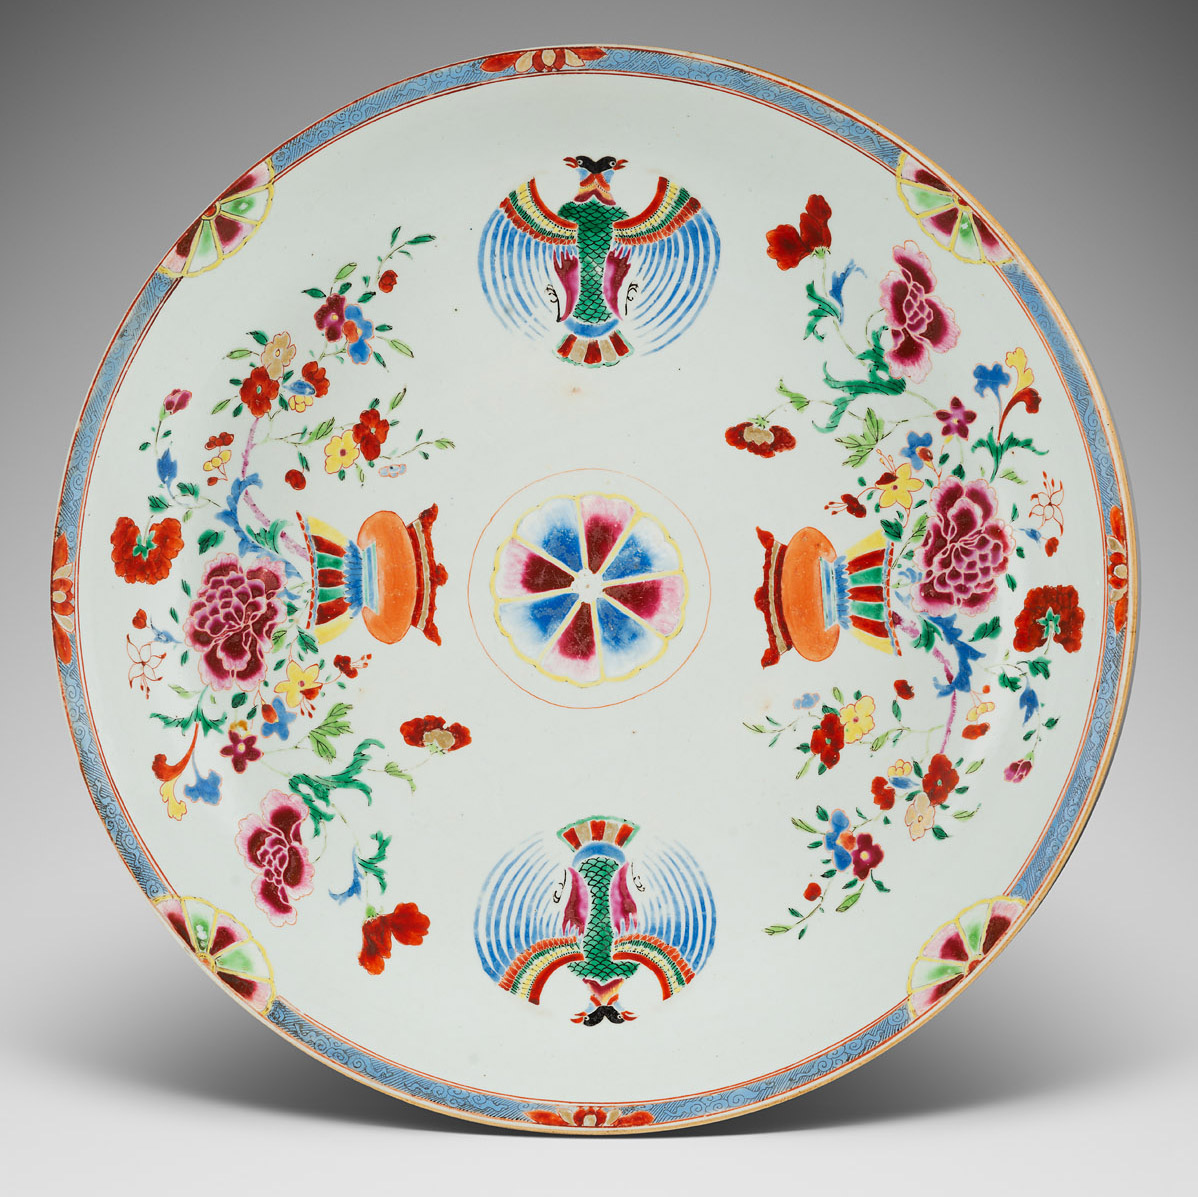 Porcelaine Qianlong (1736-1795), c. 1740, Chine